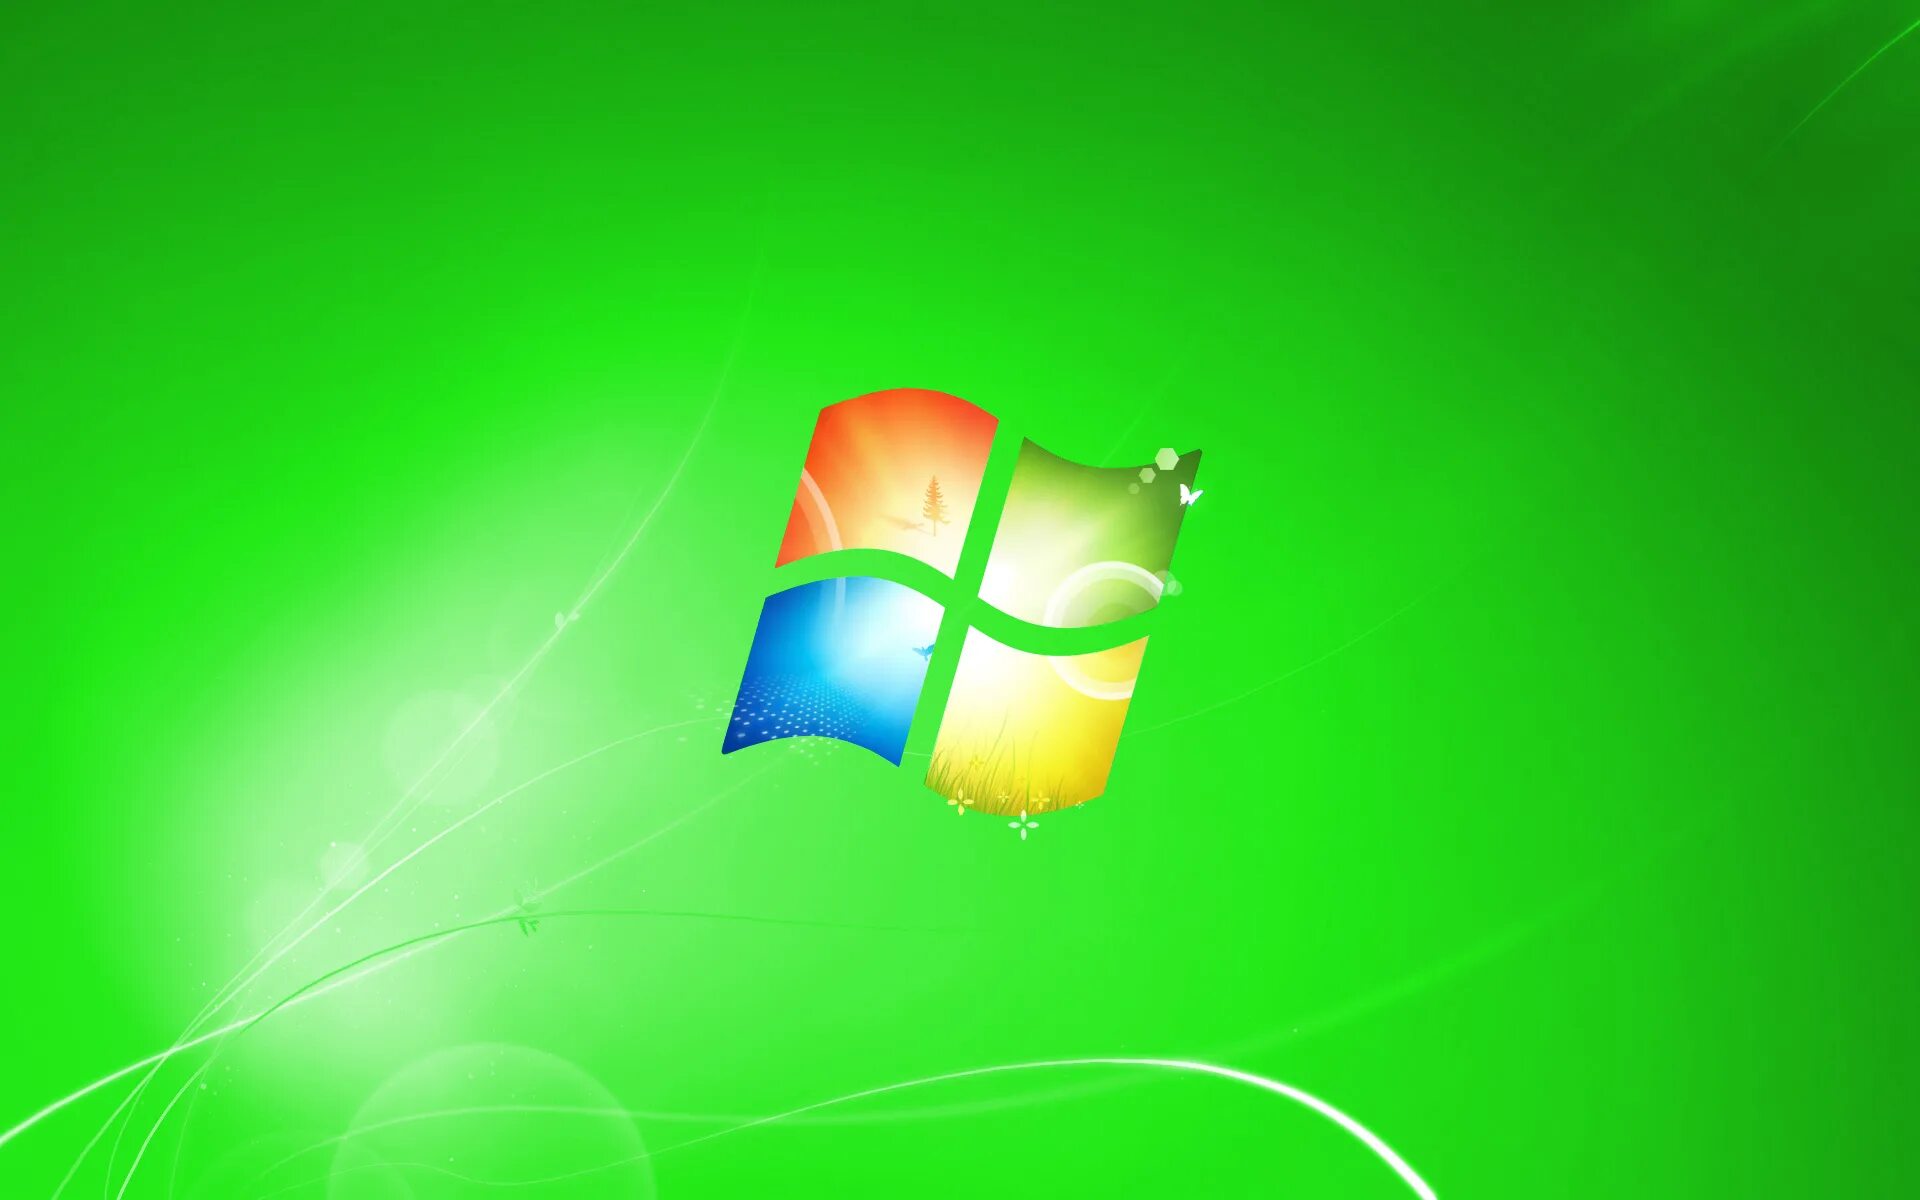 Windows 7 life. Виндовс 7. Заставка виндовс. Картинки Windows 7. Заставка Windows 7.